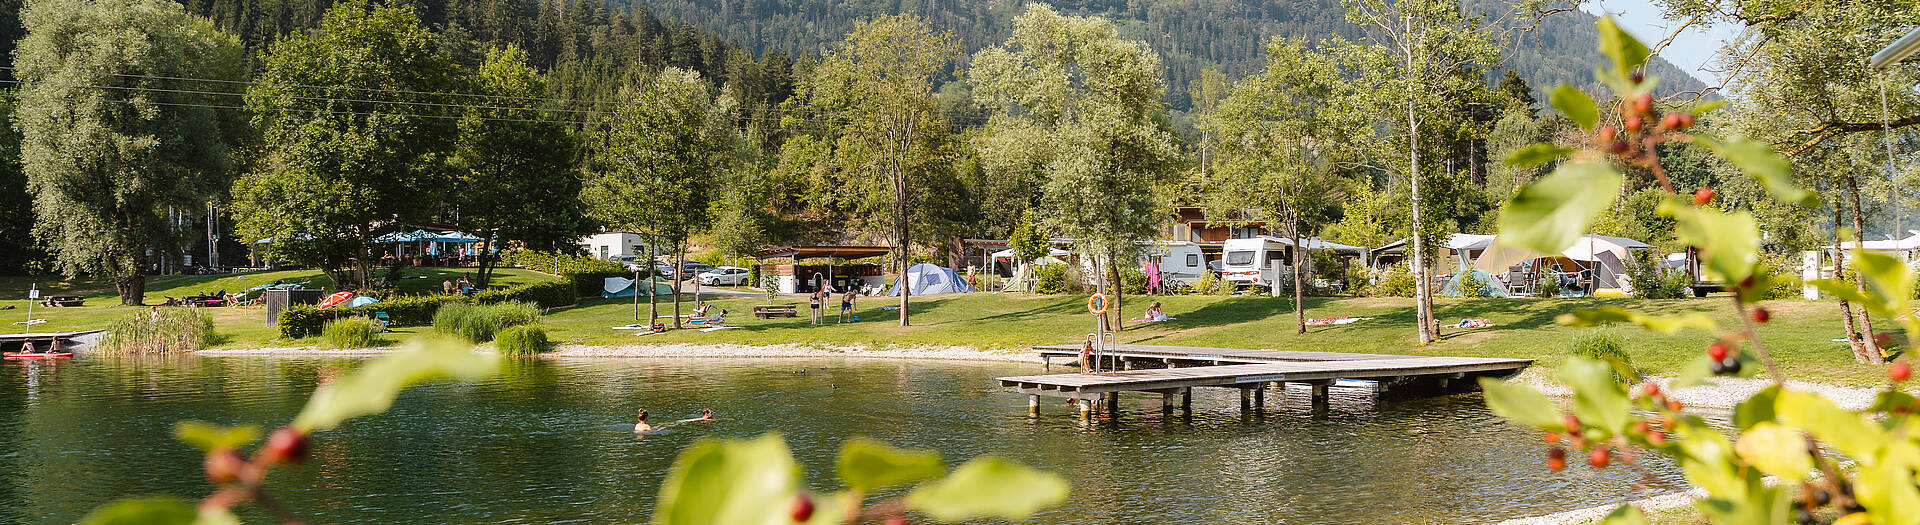 Camping Kleblach-Lind mit Badesee